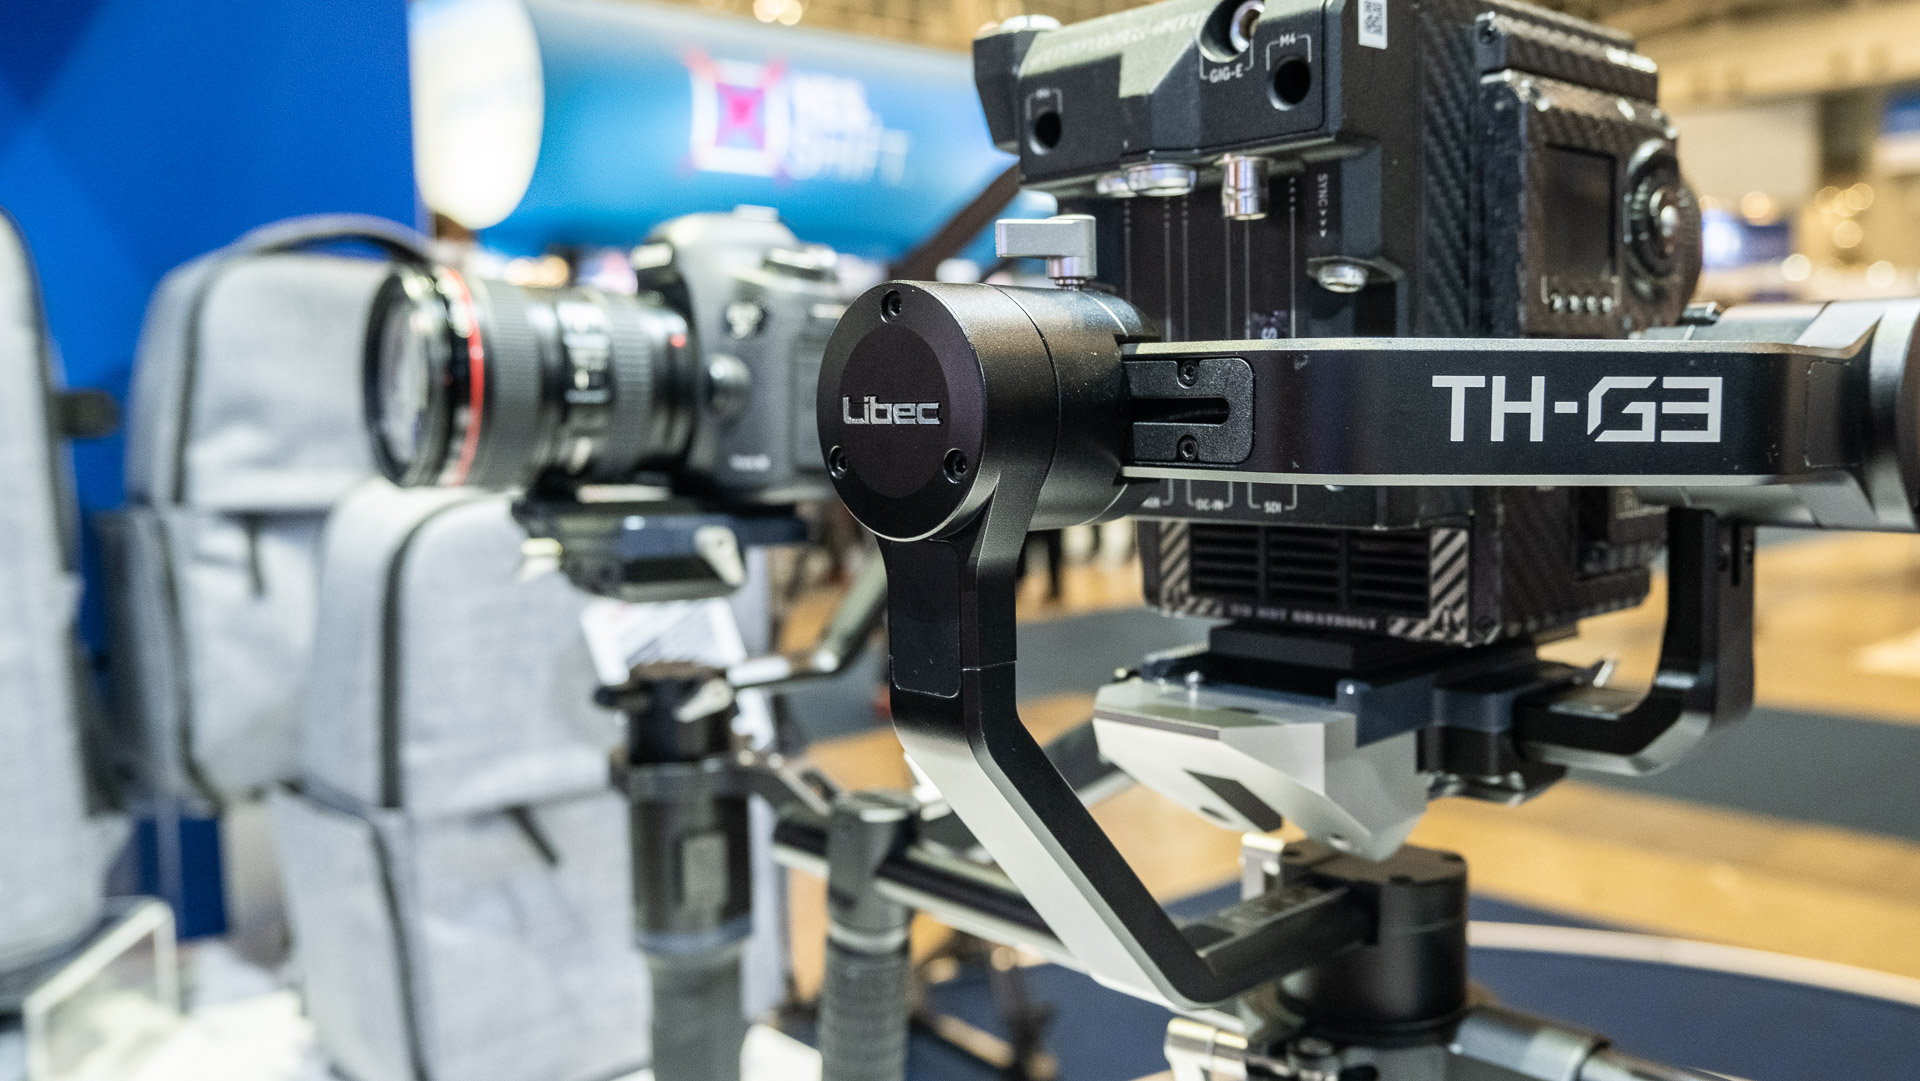 Libec（リーベック）がTH-G3ジンバルを発表 － 重量級カメラに対応 | CineD